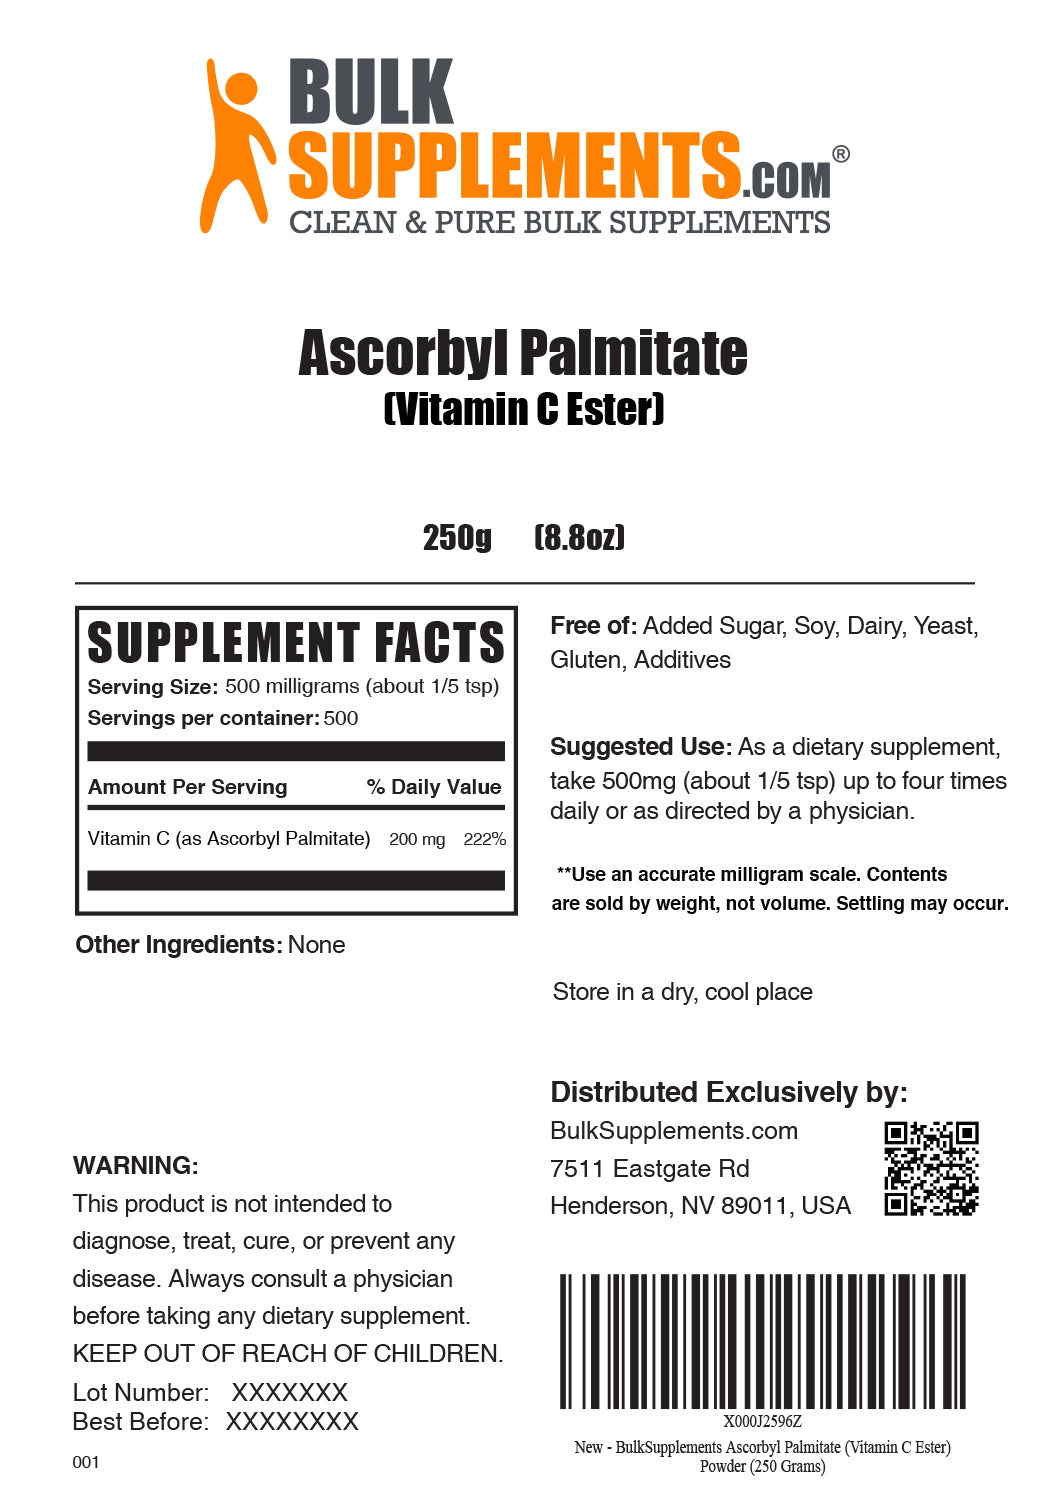 Порошок аскорбилпальмитата (эфир витамина С)